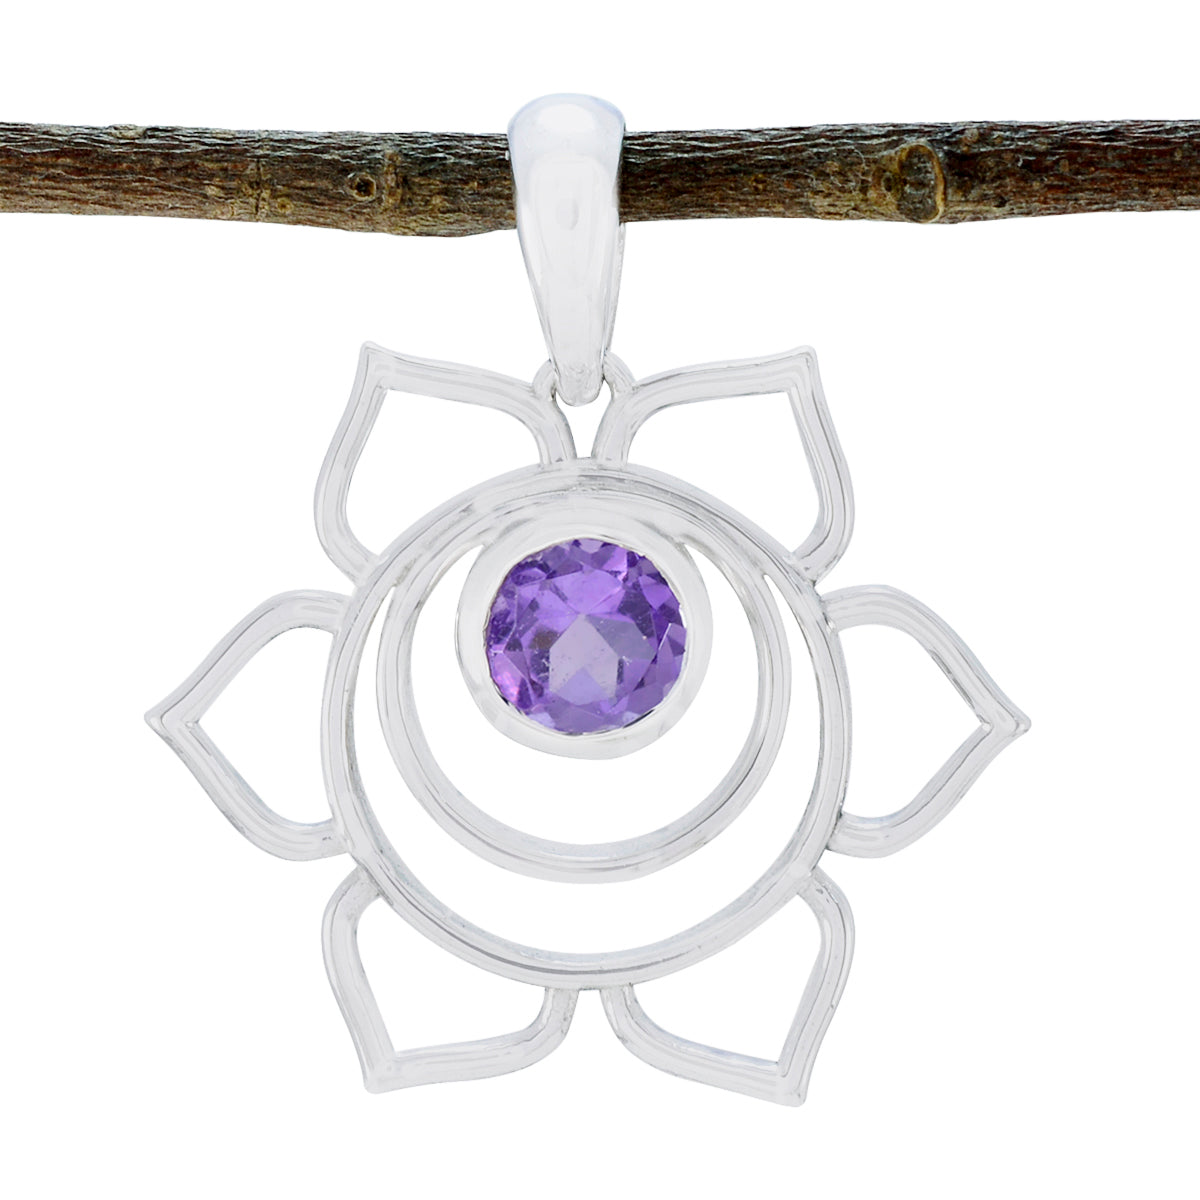 Riyo Handsome Gems runder facettierter violetter Amethyst-Silberanhänger als Geschenk zum zweiten Weihnachtsfeiertag